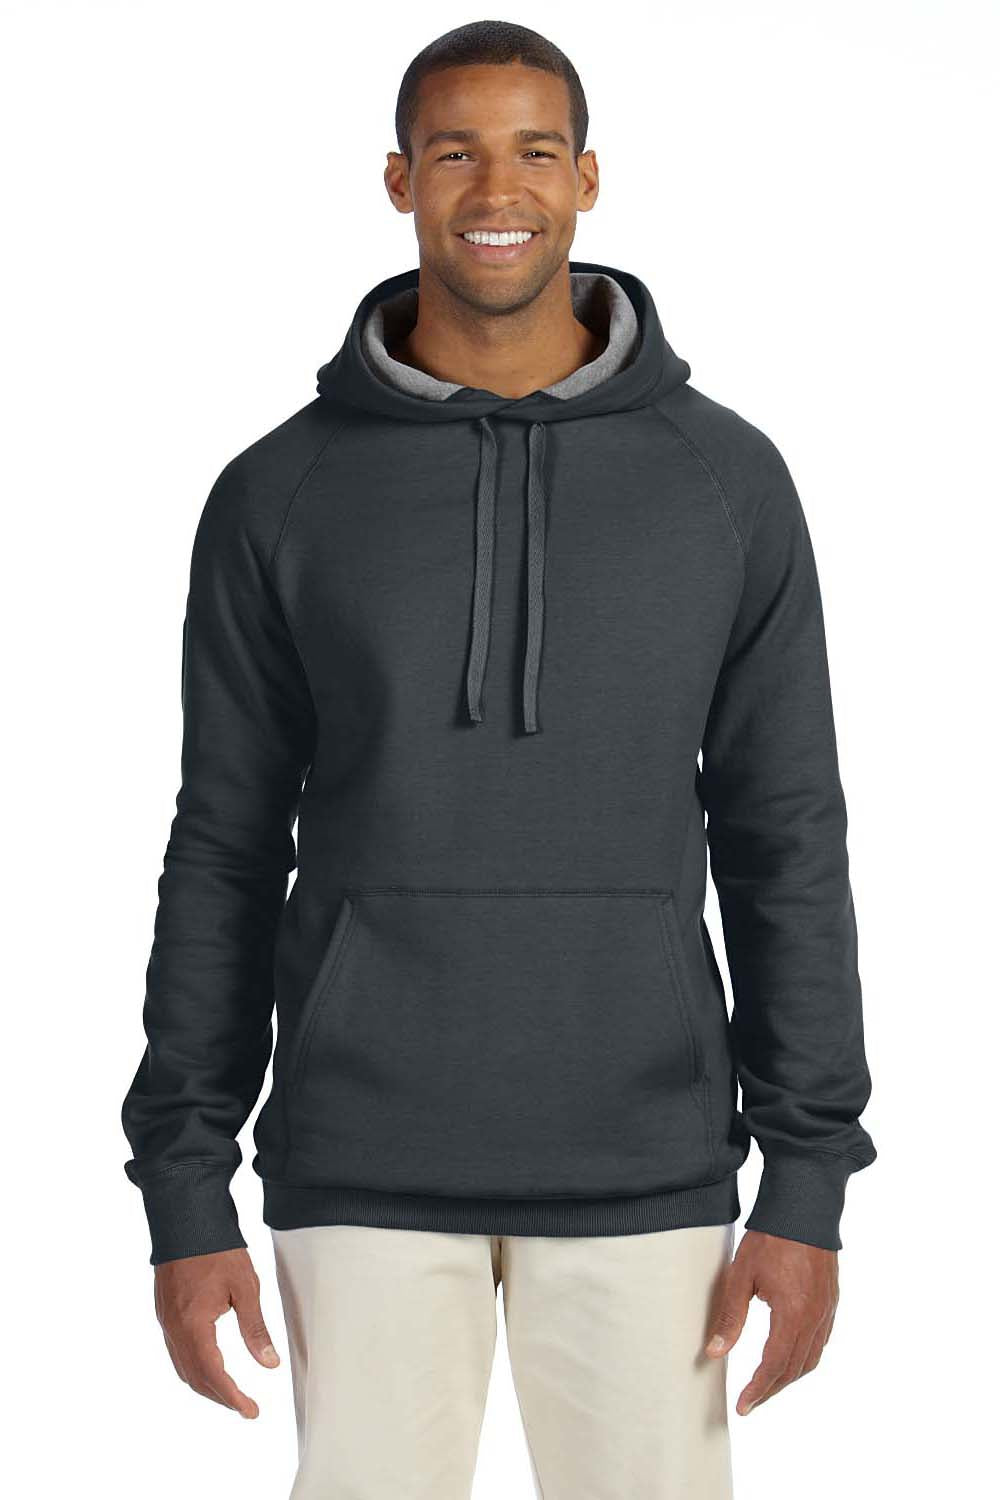 Hanes N270 Mens Nano Fleece Hooded Sweatshirt Hoodie Vintage Black Front